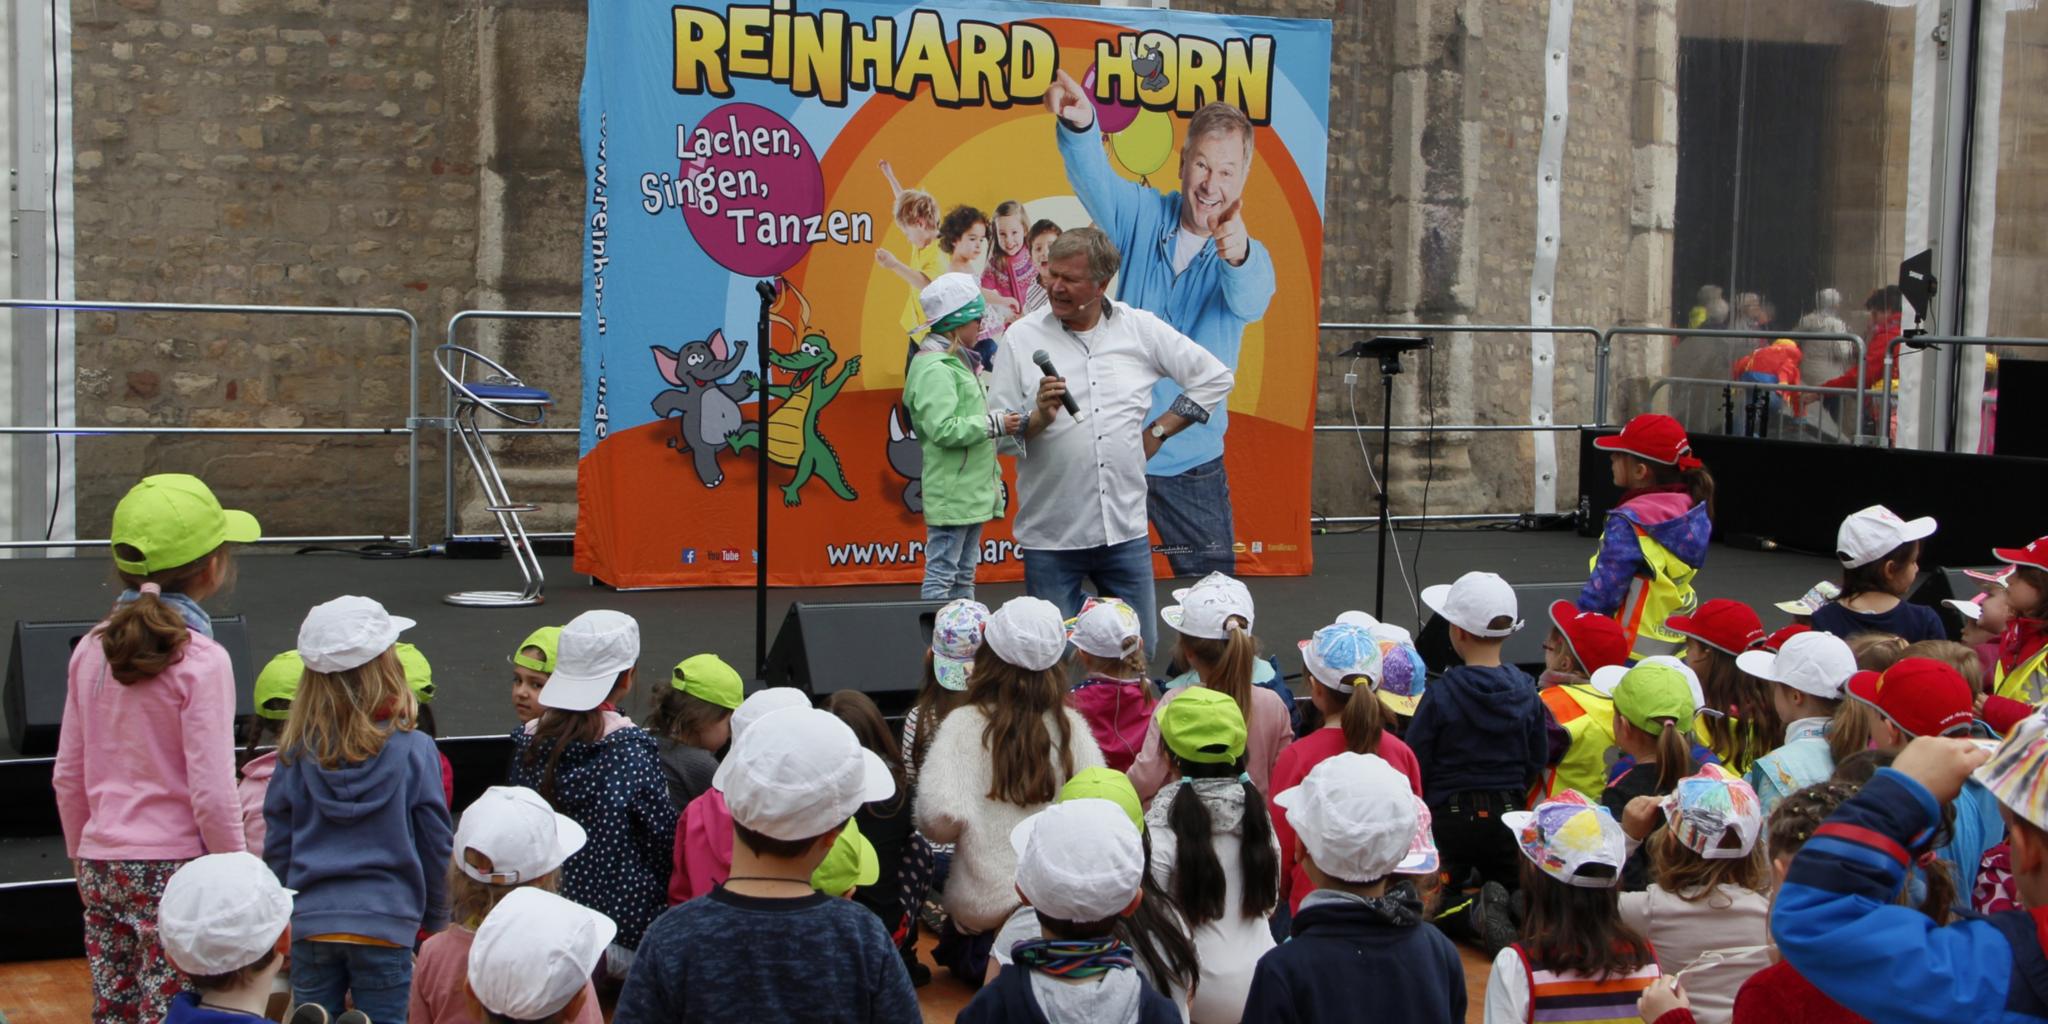 Das Konzert 2019 mit Reinhard Horn war für die Kinder beim Kita-Tag wieder einer der Höhepunkte. In diesem Jahr findet das Konzert im Internet statt